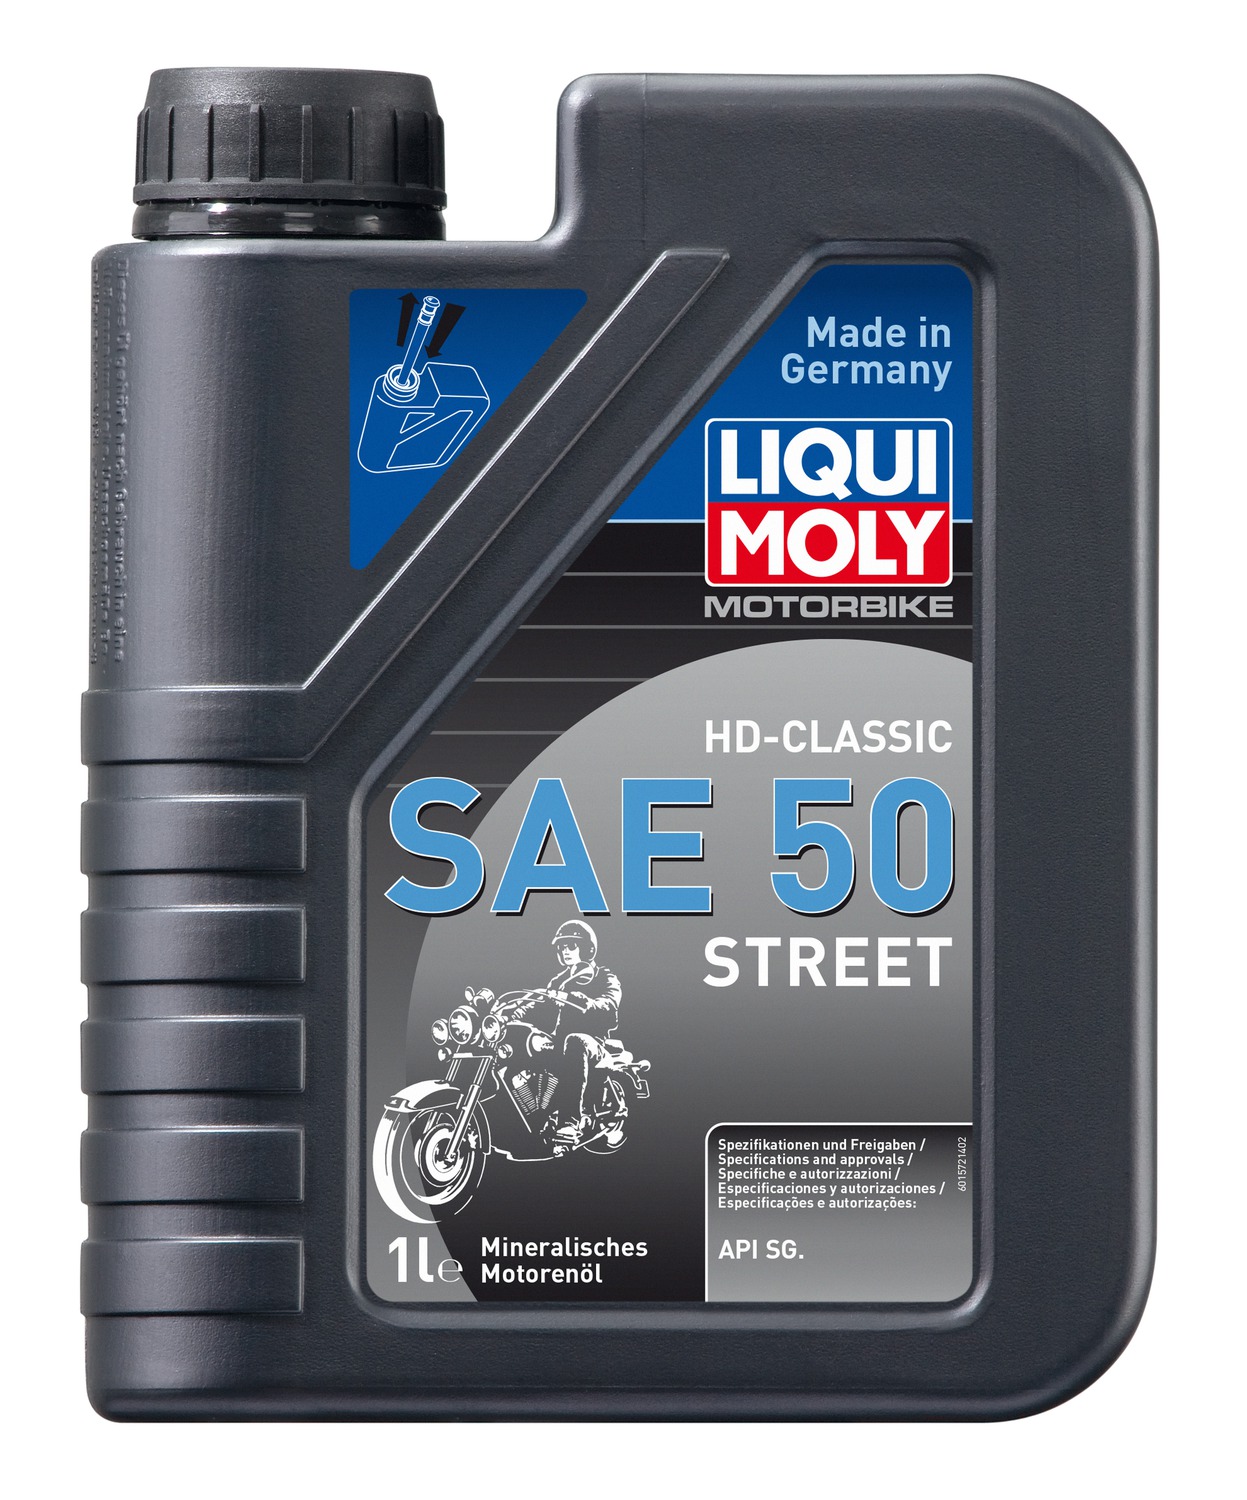 Obrázek produktu LIQUI MOLY Motorbike HD-Classic SAE 50 Street, minerální motorový olej 1 l 1572